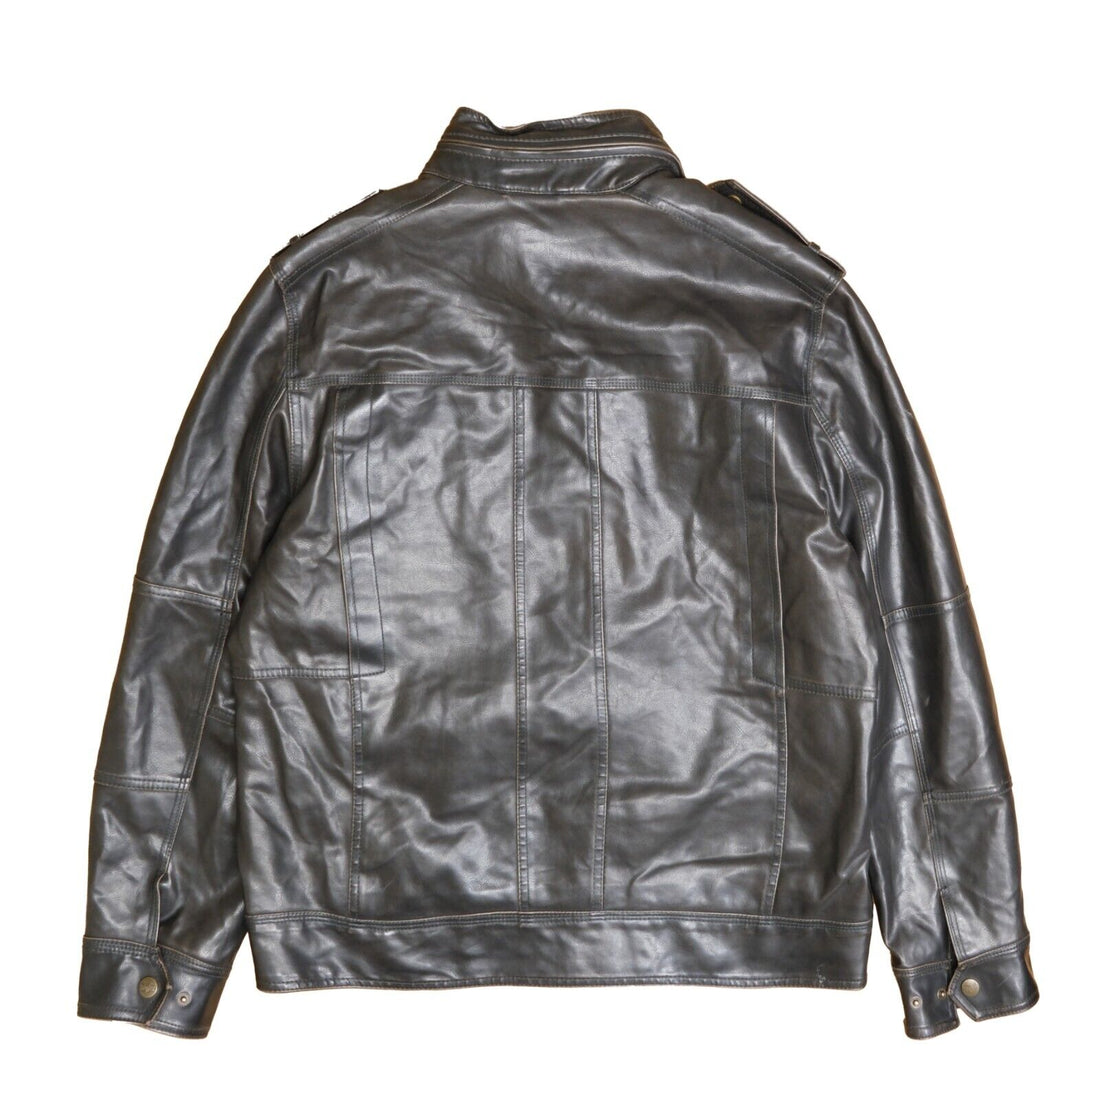 Levi's Leather Coat Jacket Size Large Black